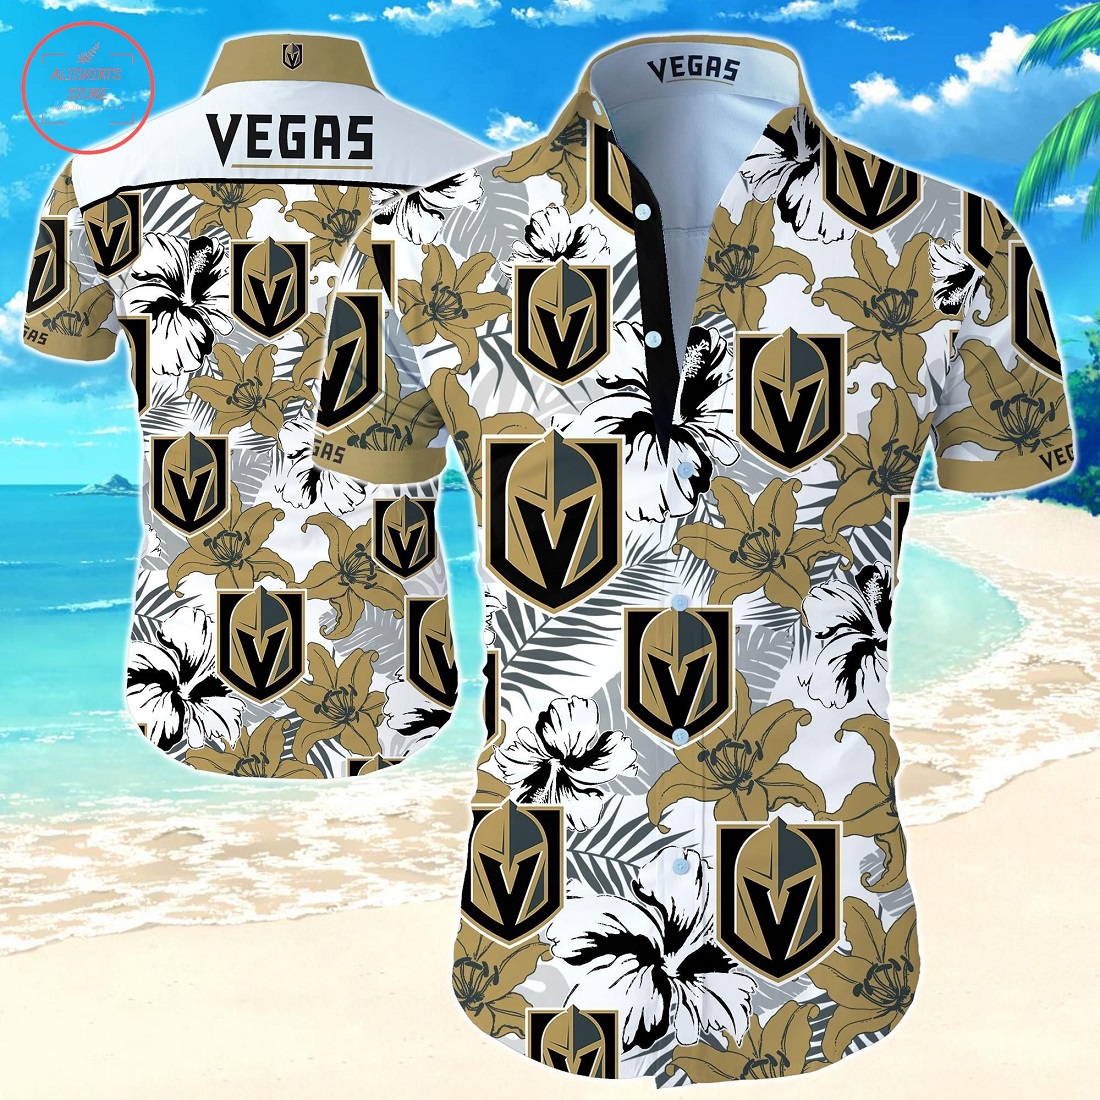 Vegas Golden Knights Hawaiian Shirt